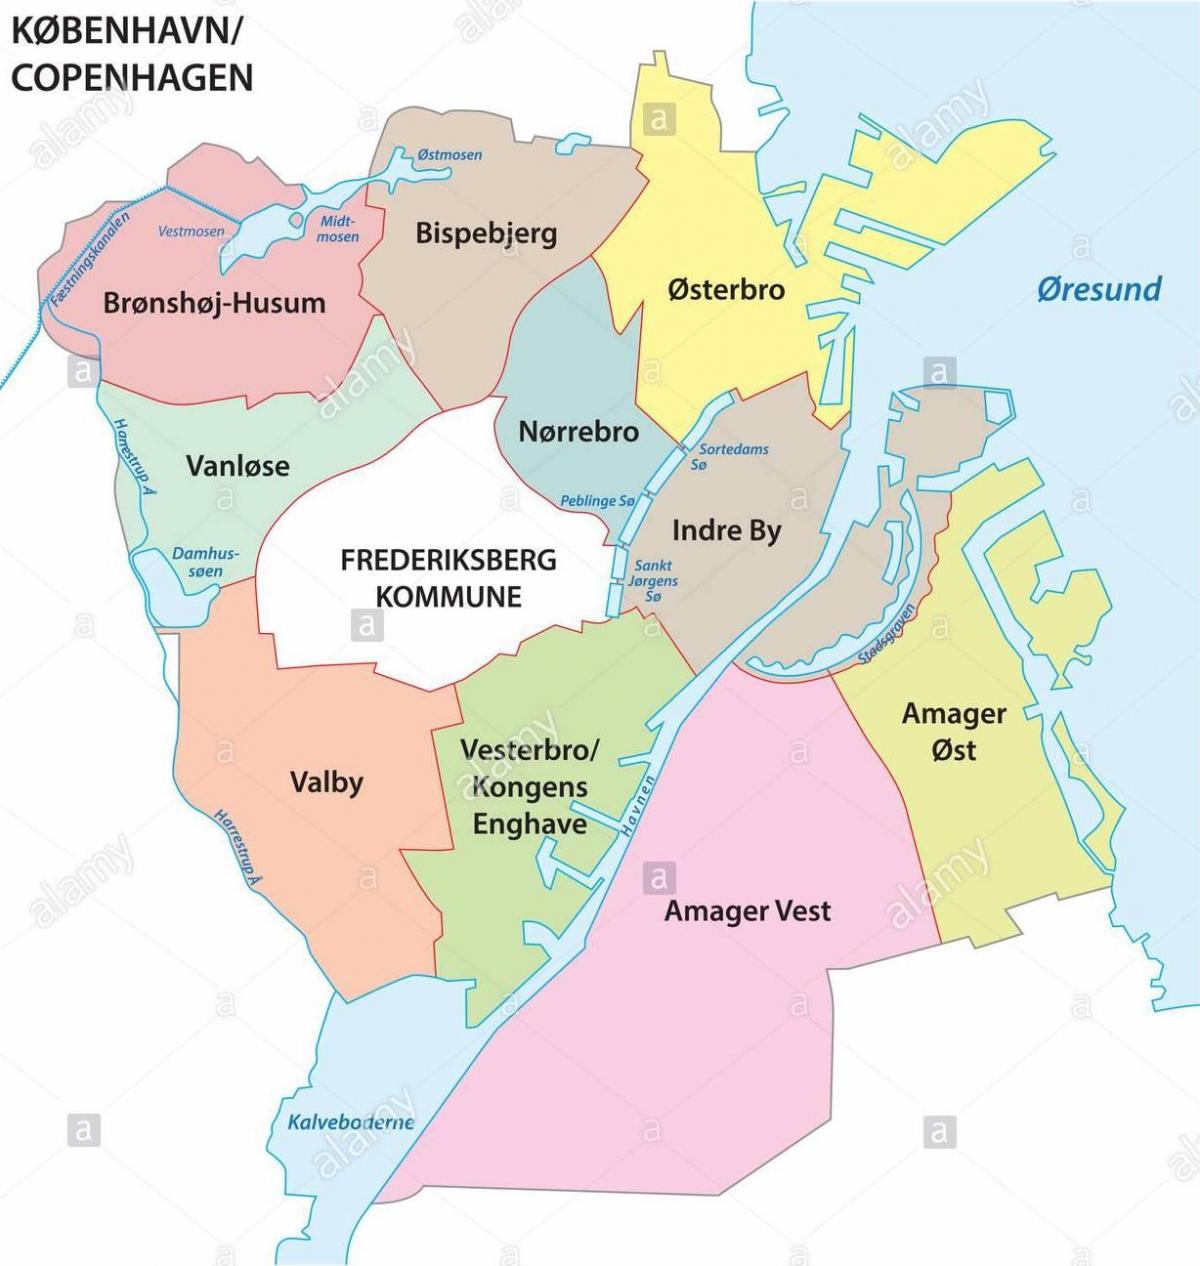 Stadtteilkarte Kopenhagen